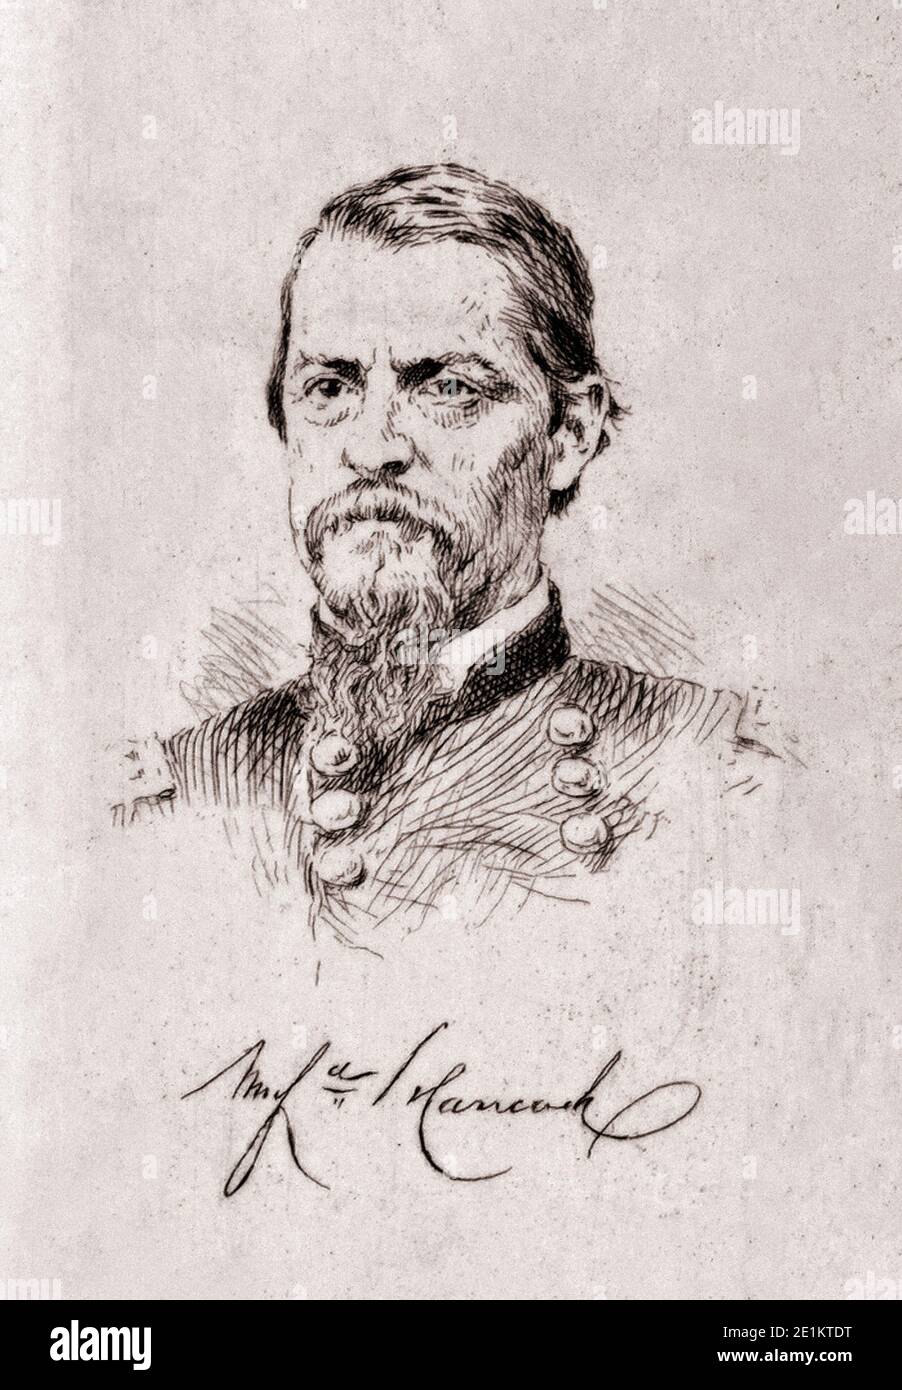 Porträt des Generals Hancock. Winfield Scott Hancock (1824 – 1886) war ein Offizier der US-Armee und der demokratische Kandidat für den Präsidenten der Uni Stockfoto